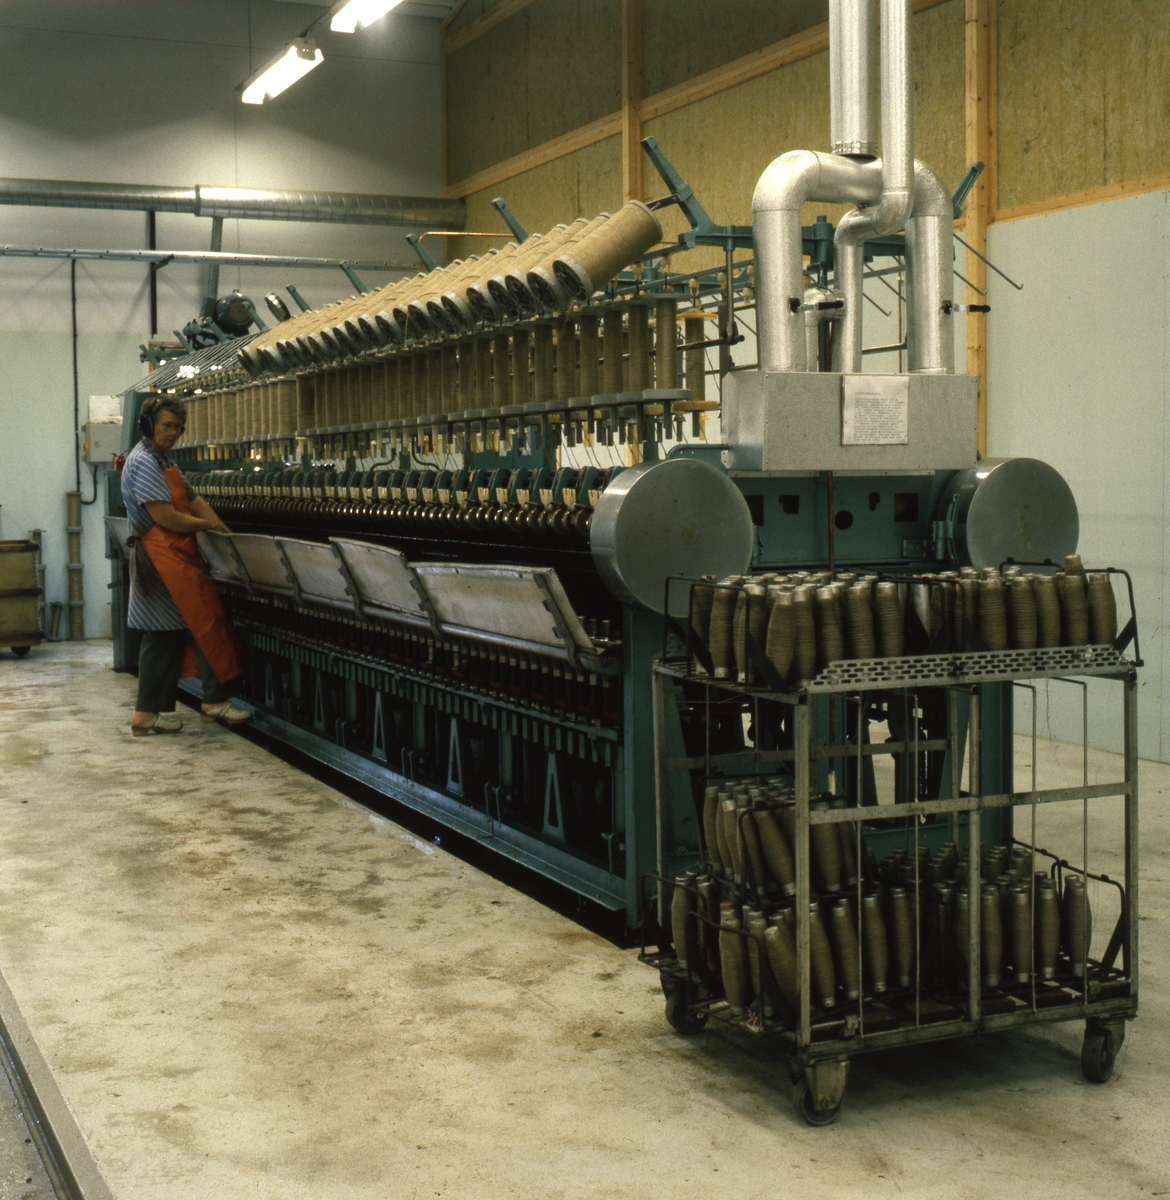 En kvinna står och sköter en stor maskin med bobiner med lintråd på i en industrilokal.